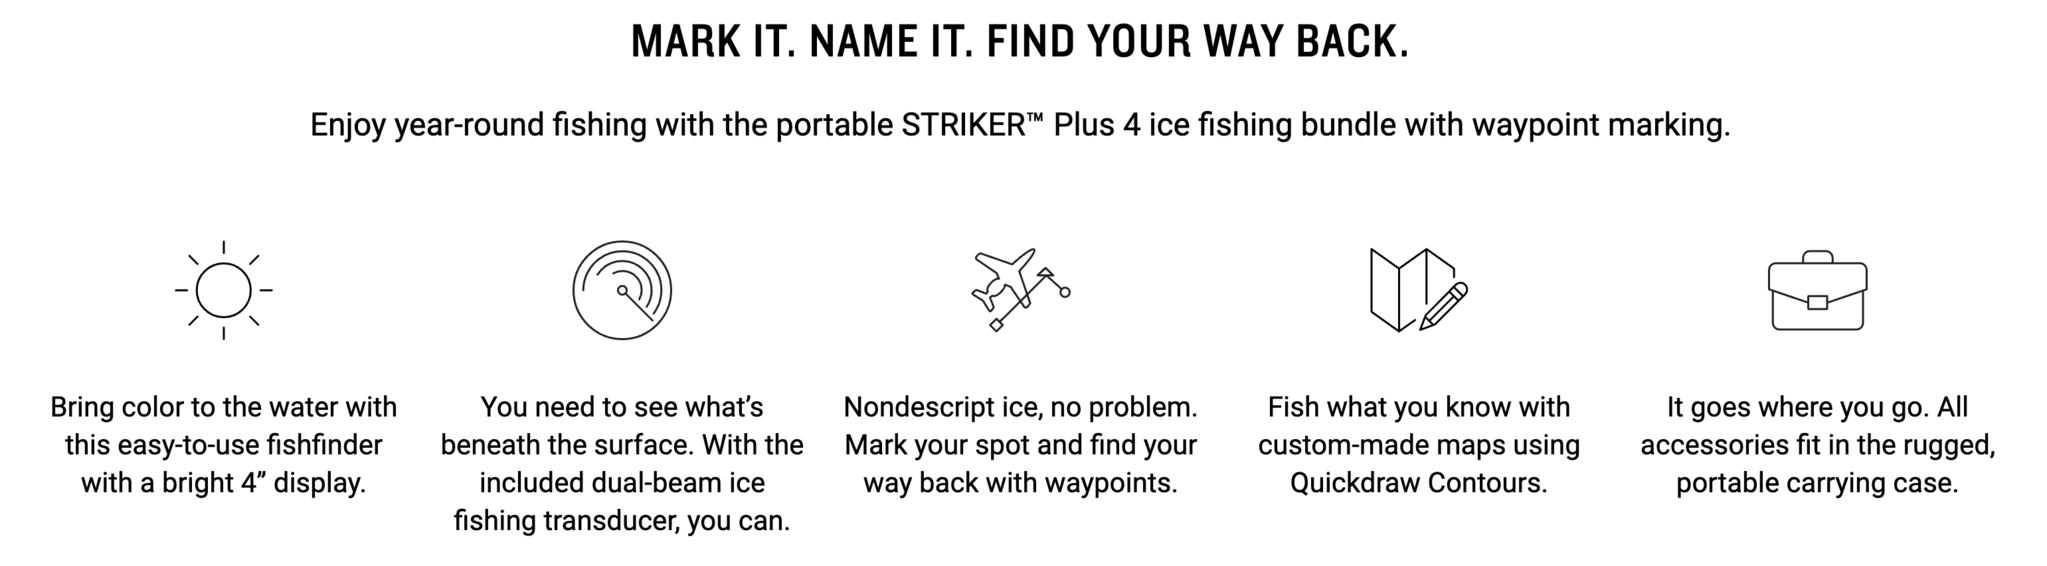 GARMIN STRIKER PLUS 4 ICE BUNDLE FISHFINDER W/ ICE FISHING ACCESSORIES